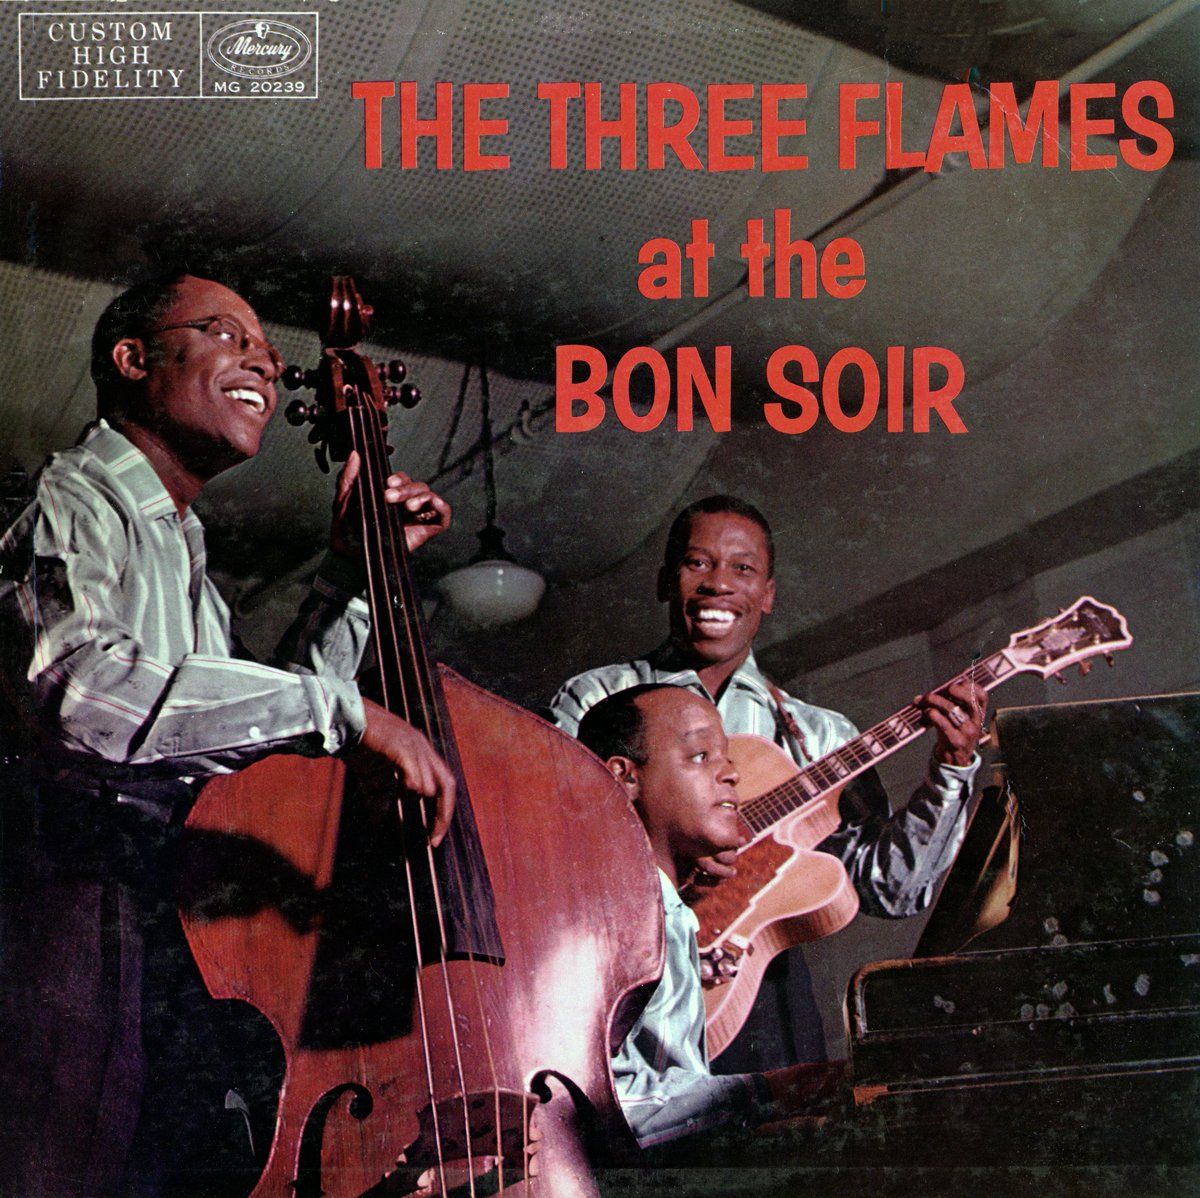 An album cover of The Three Flames at the Bon Soir